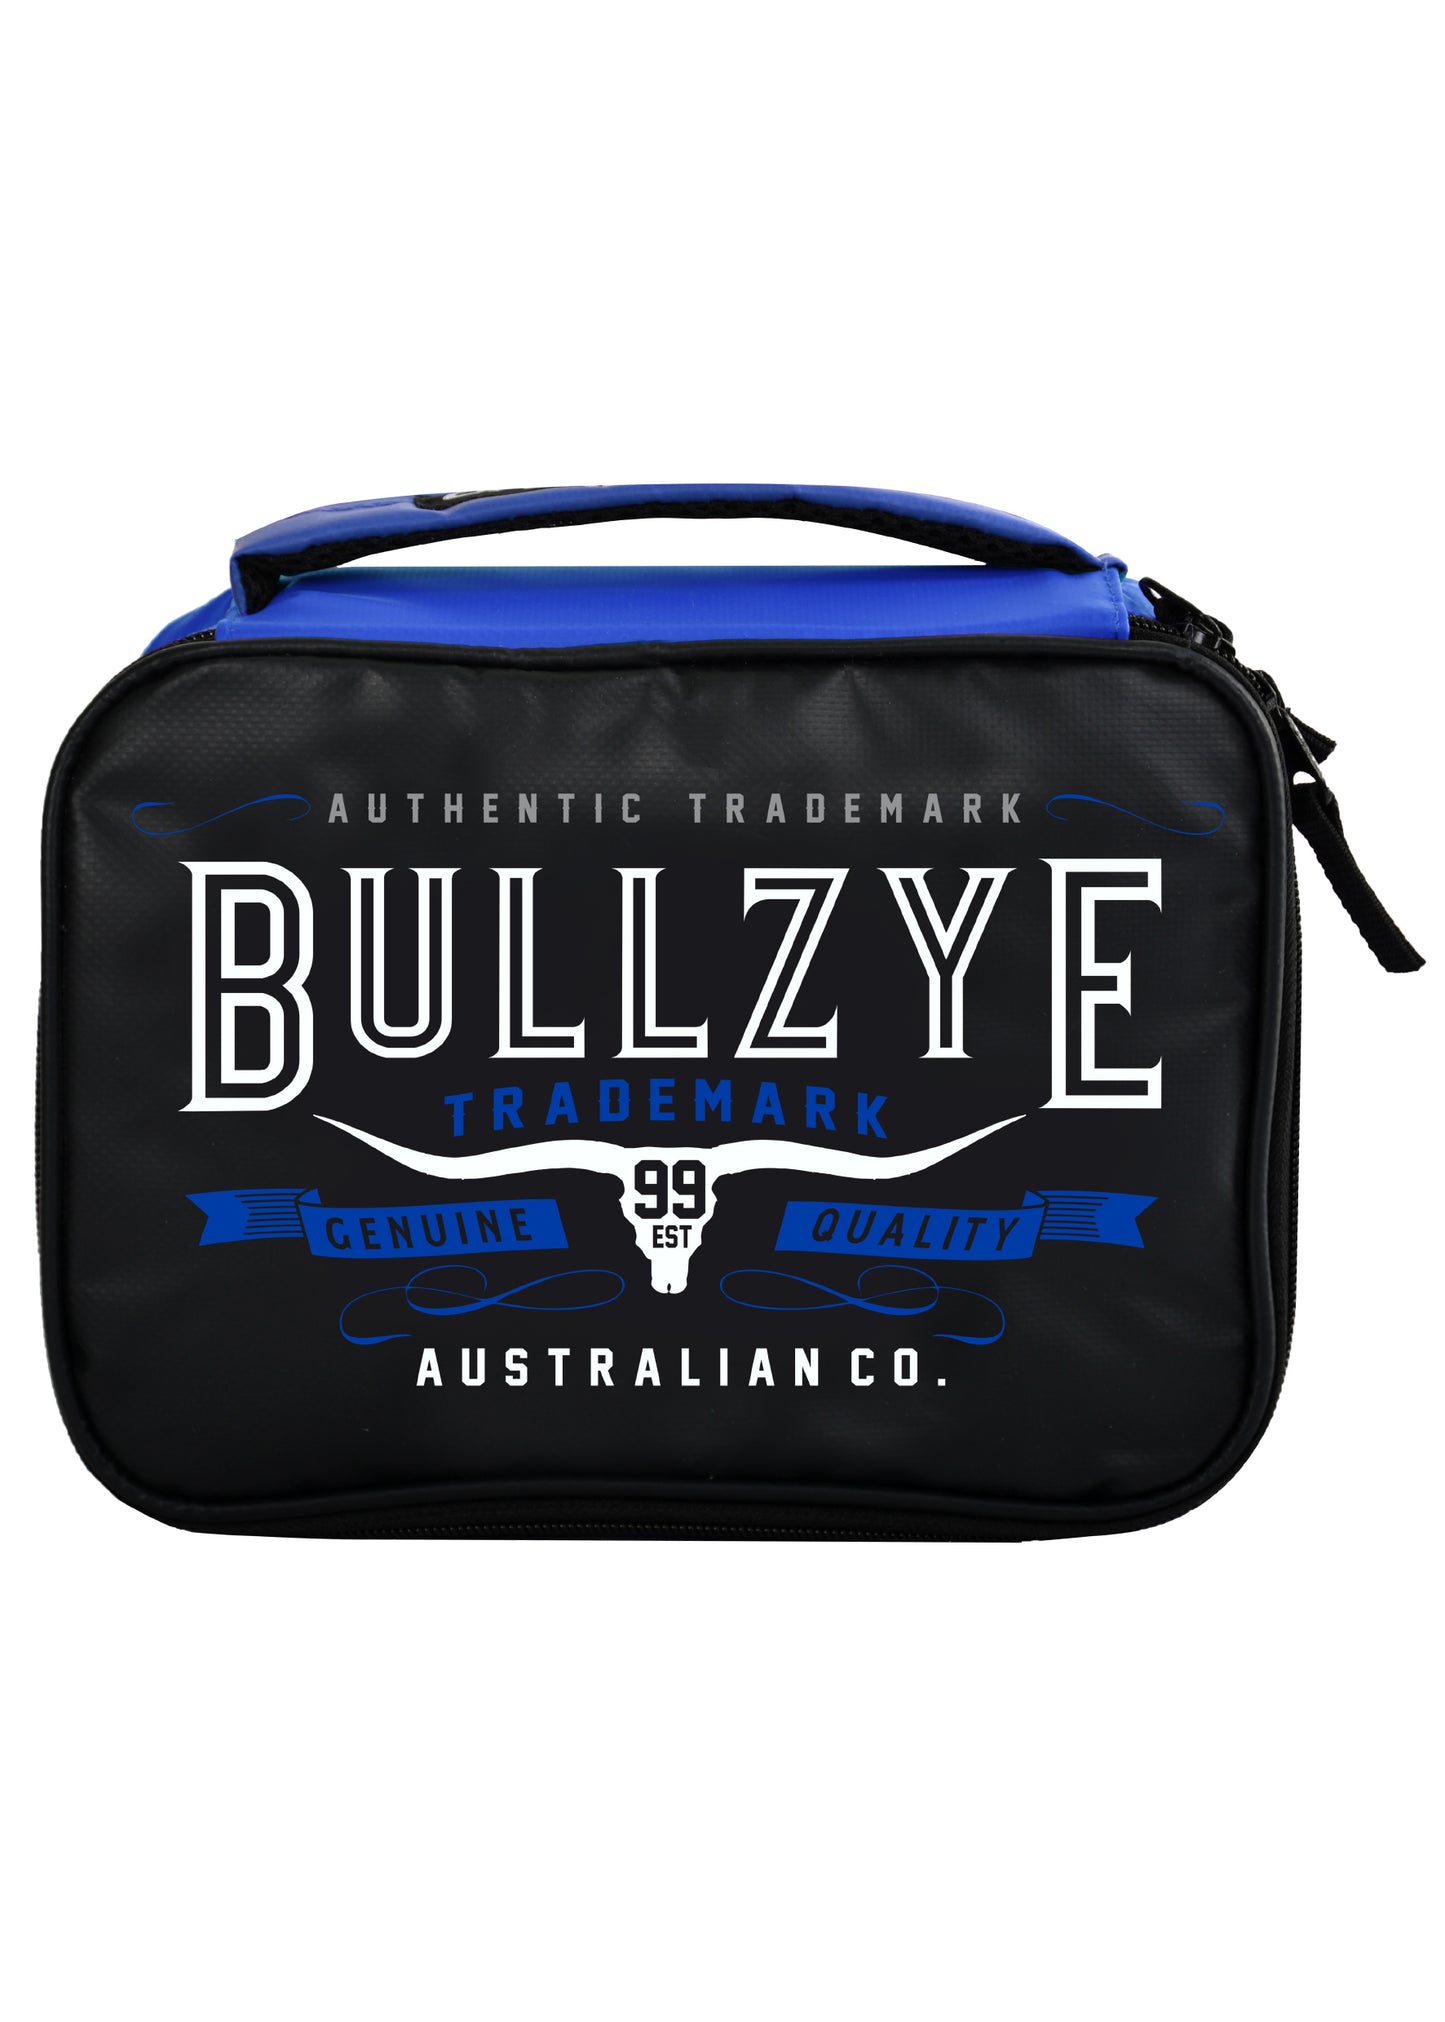 Bullzye Longhorn Lunchbox - Blue